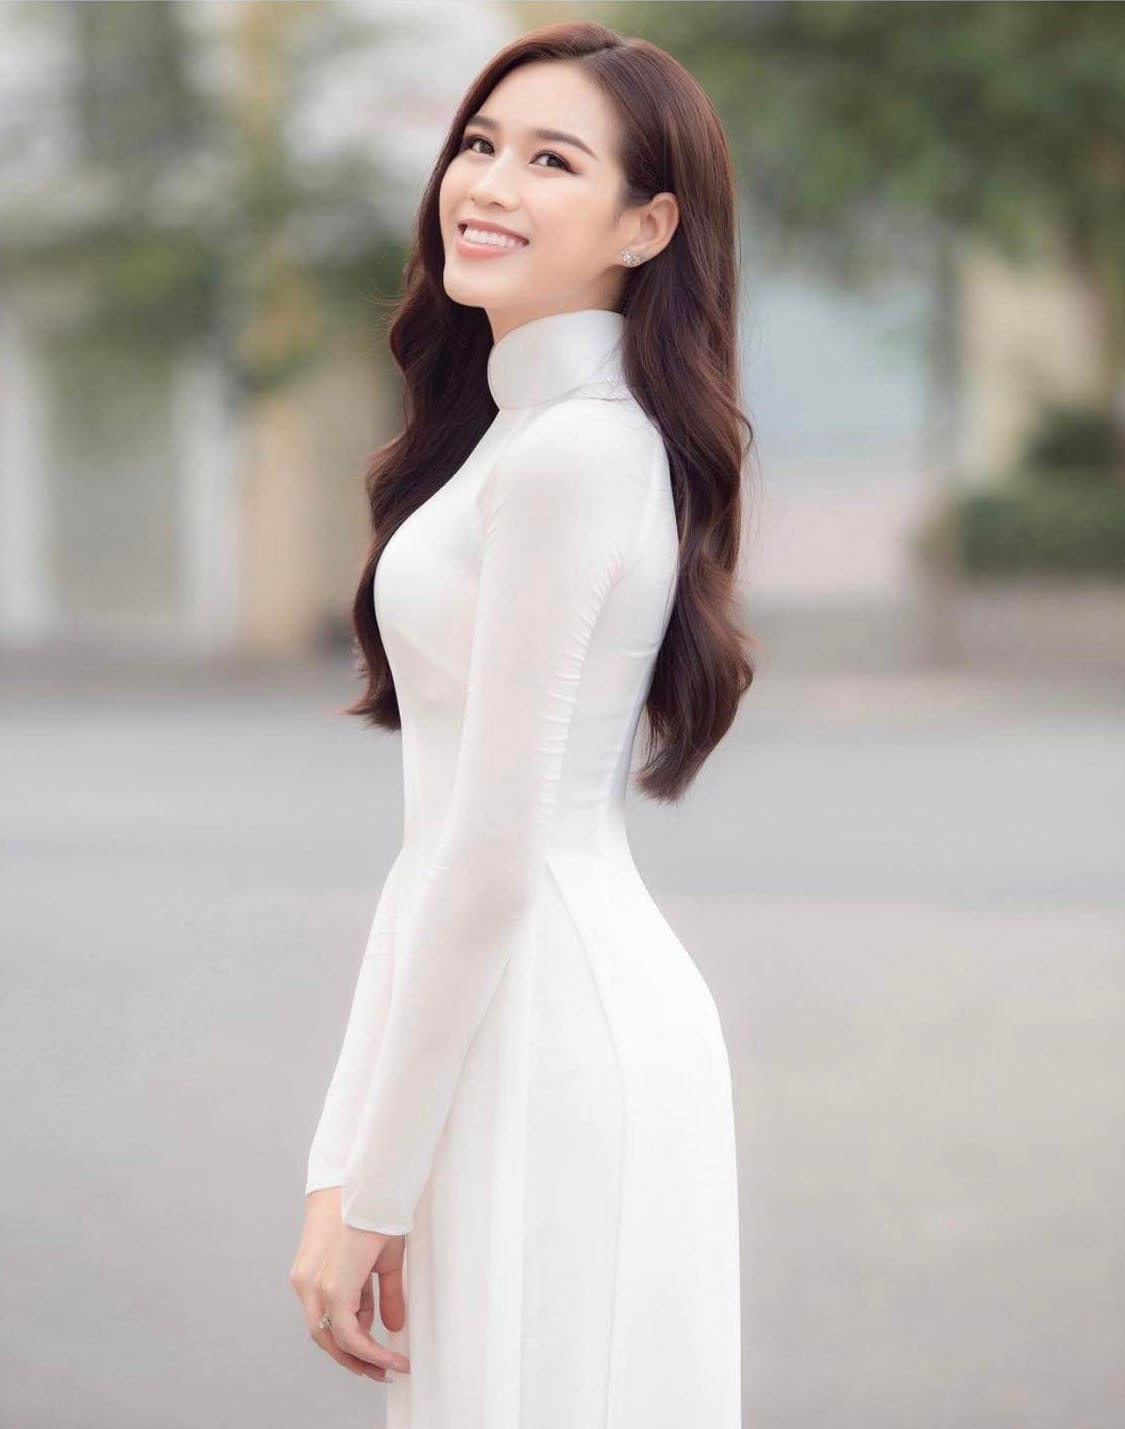 Hoa hậu Đỗ Thị Hà mặc áo dài trắng như nàng thơ - 1